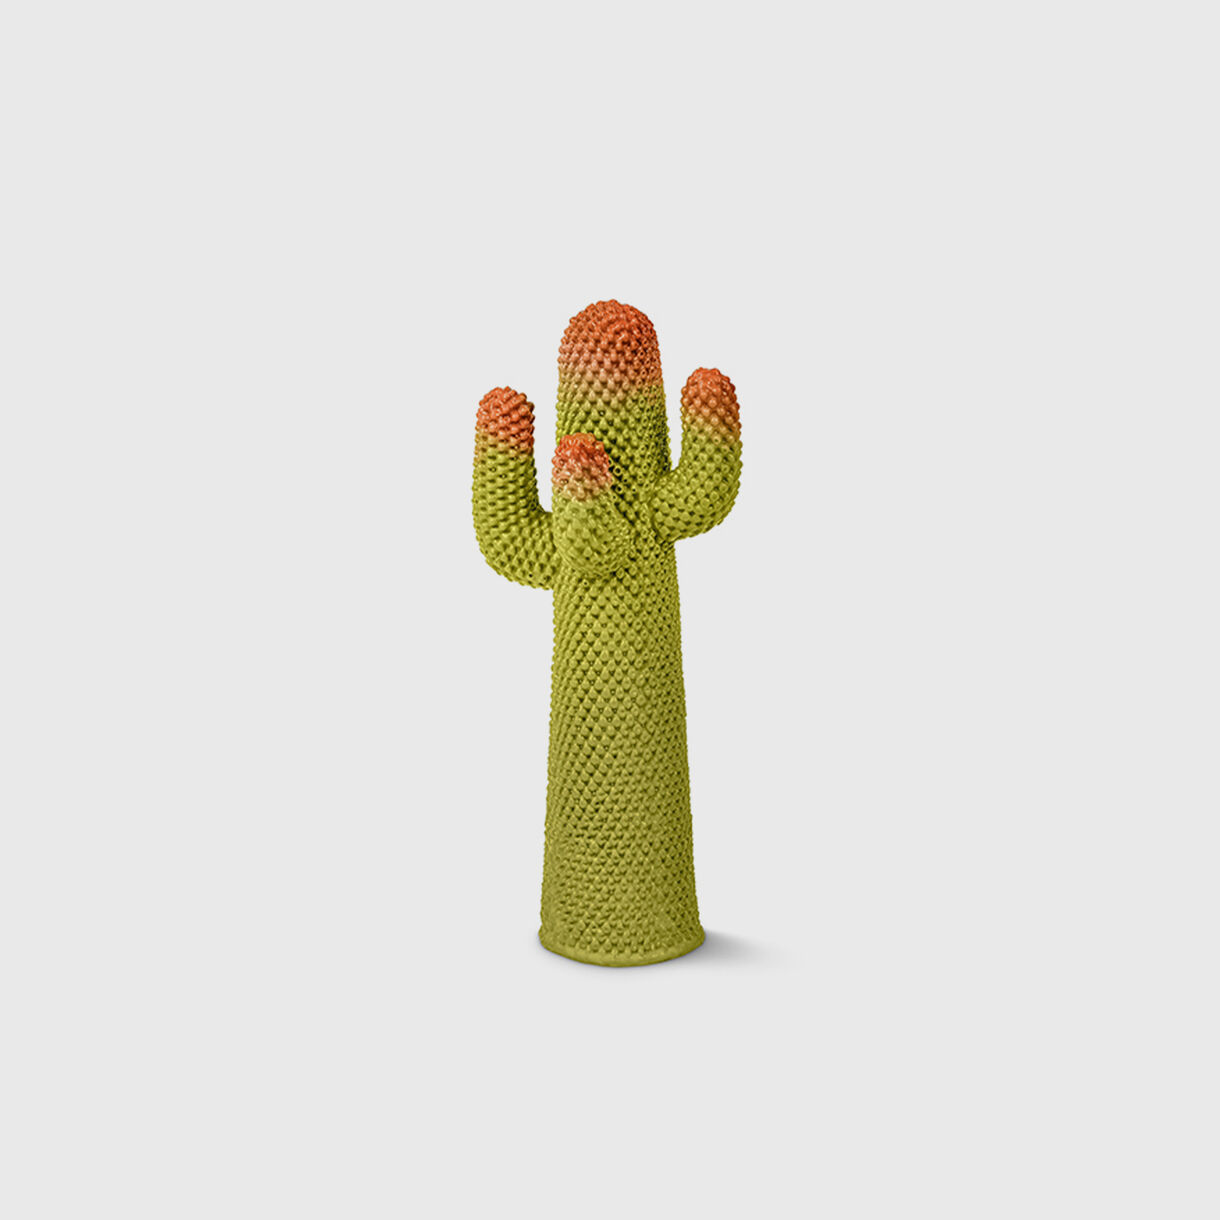 Guframini Cactus, Meta